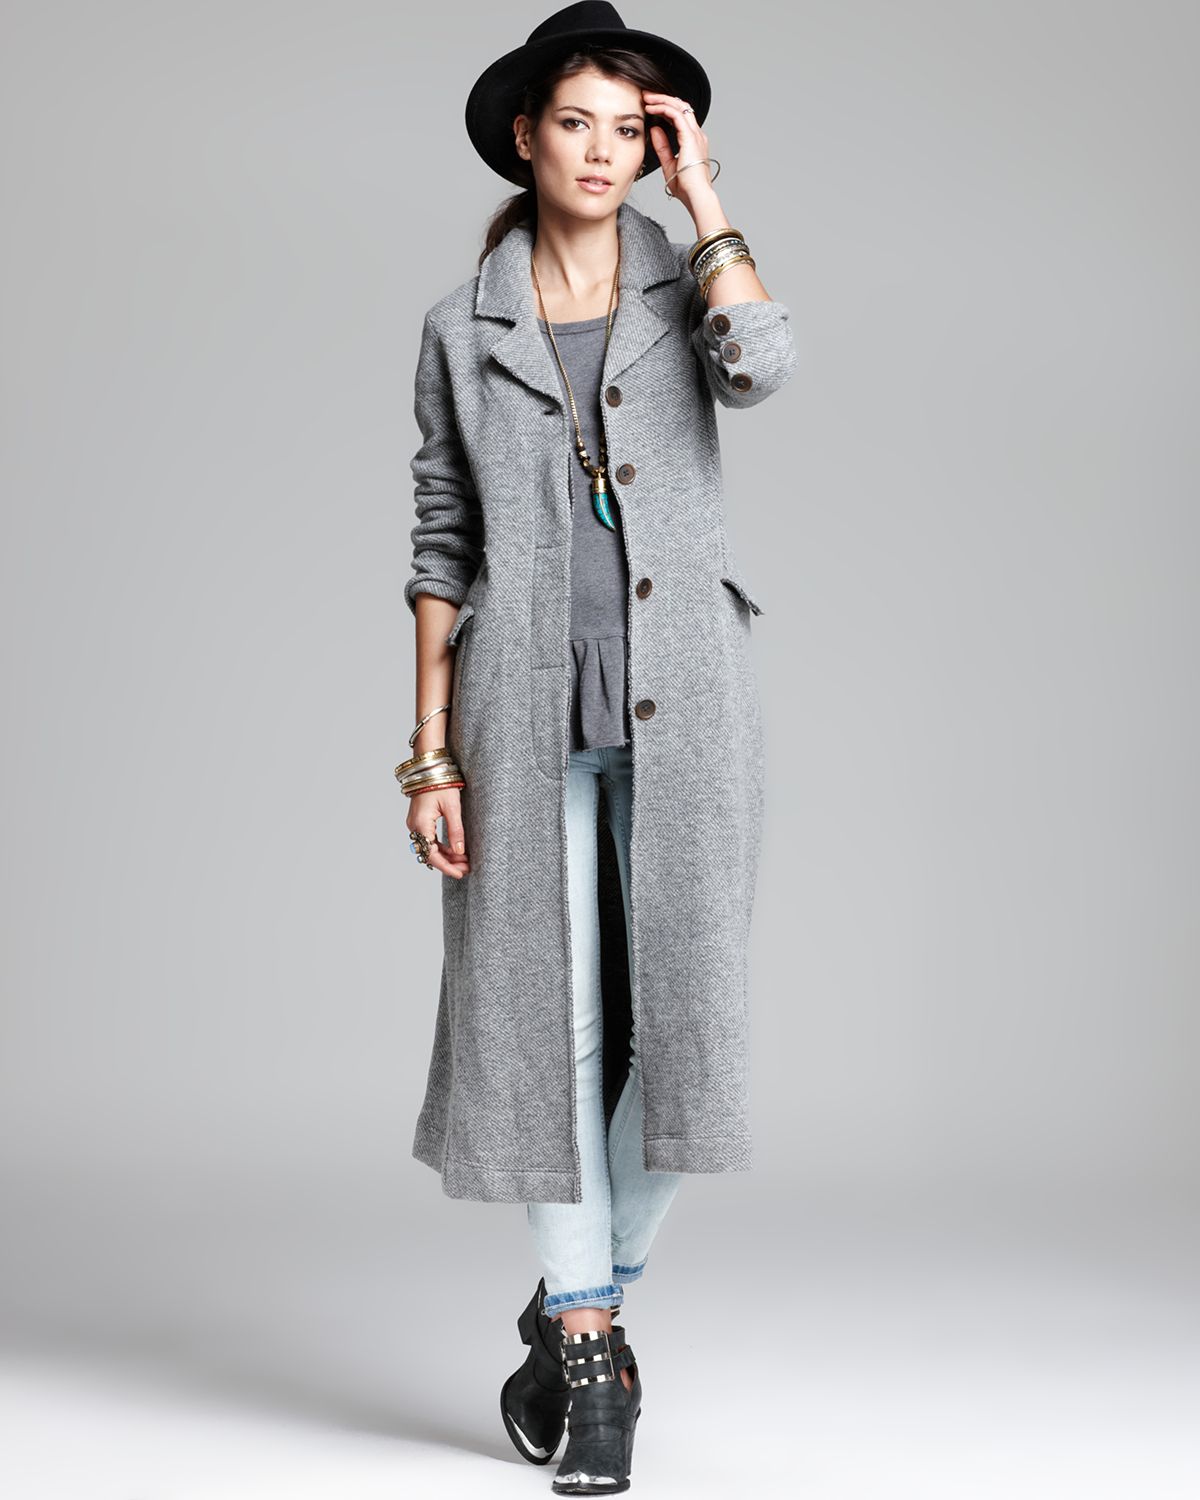 Lyst - Free People Duster Jacket Menswear Textured Swit in Gray